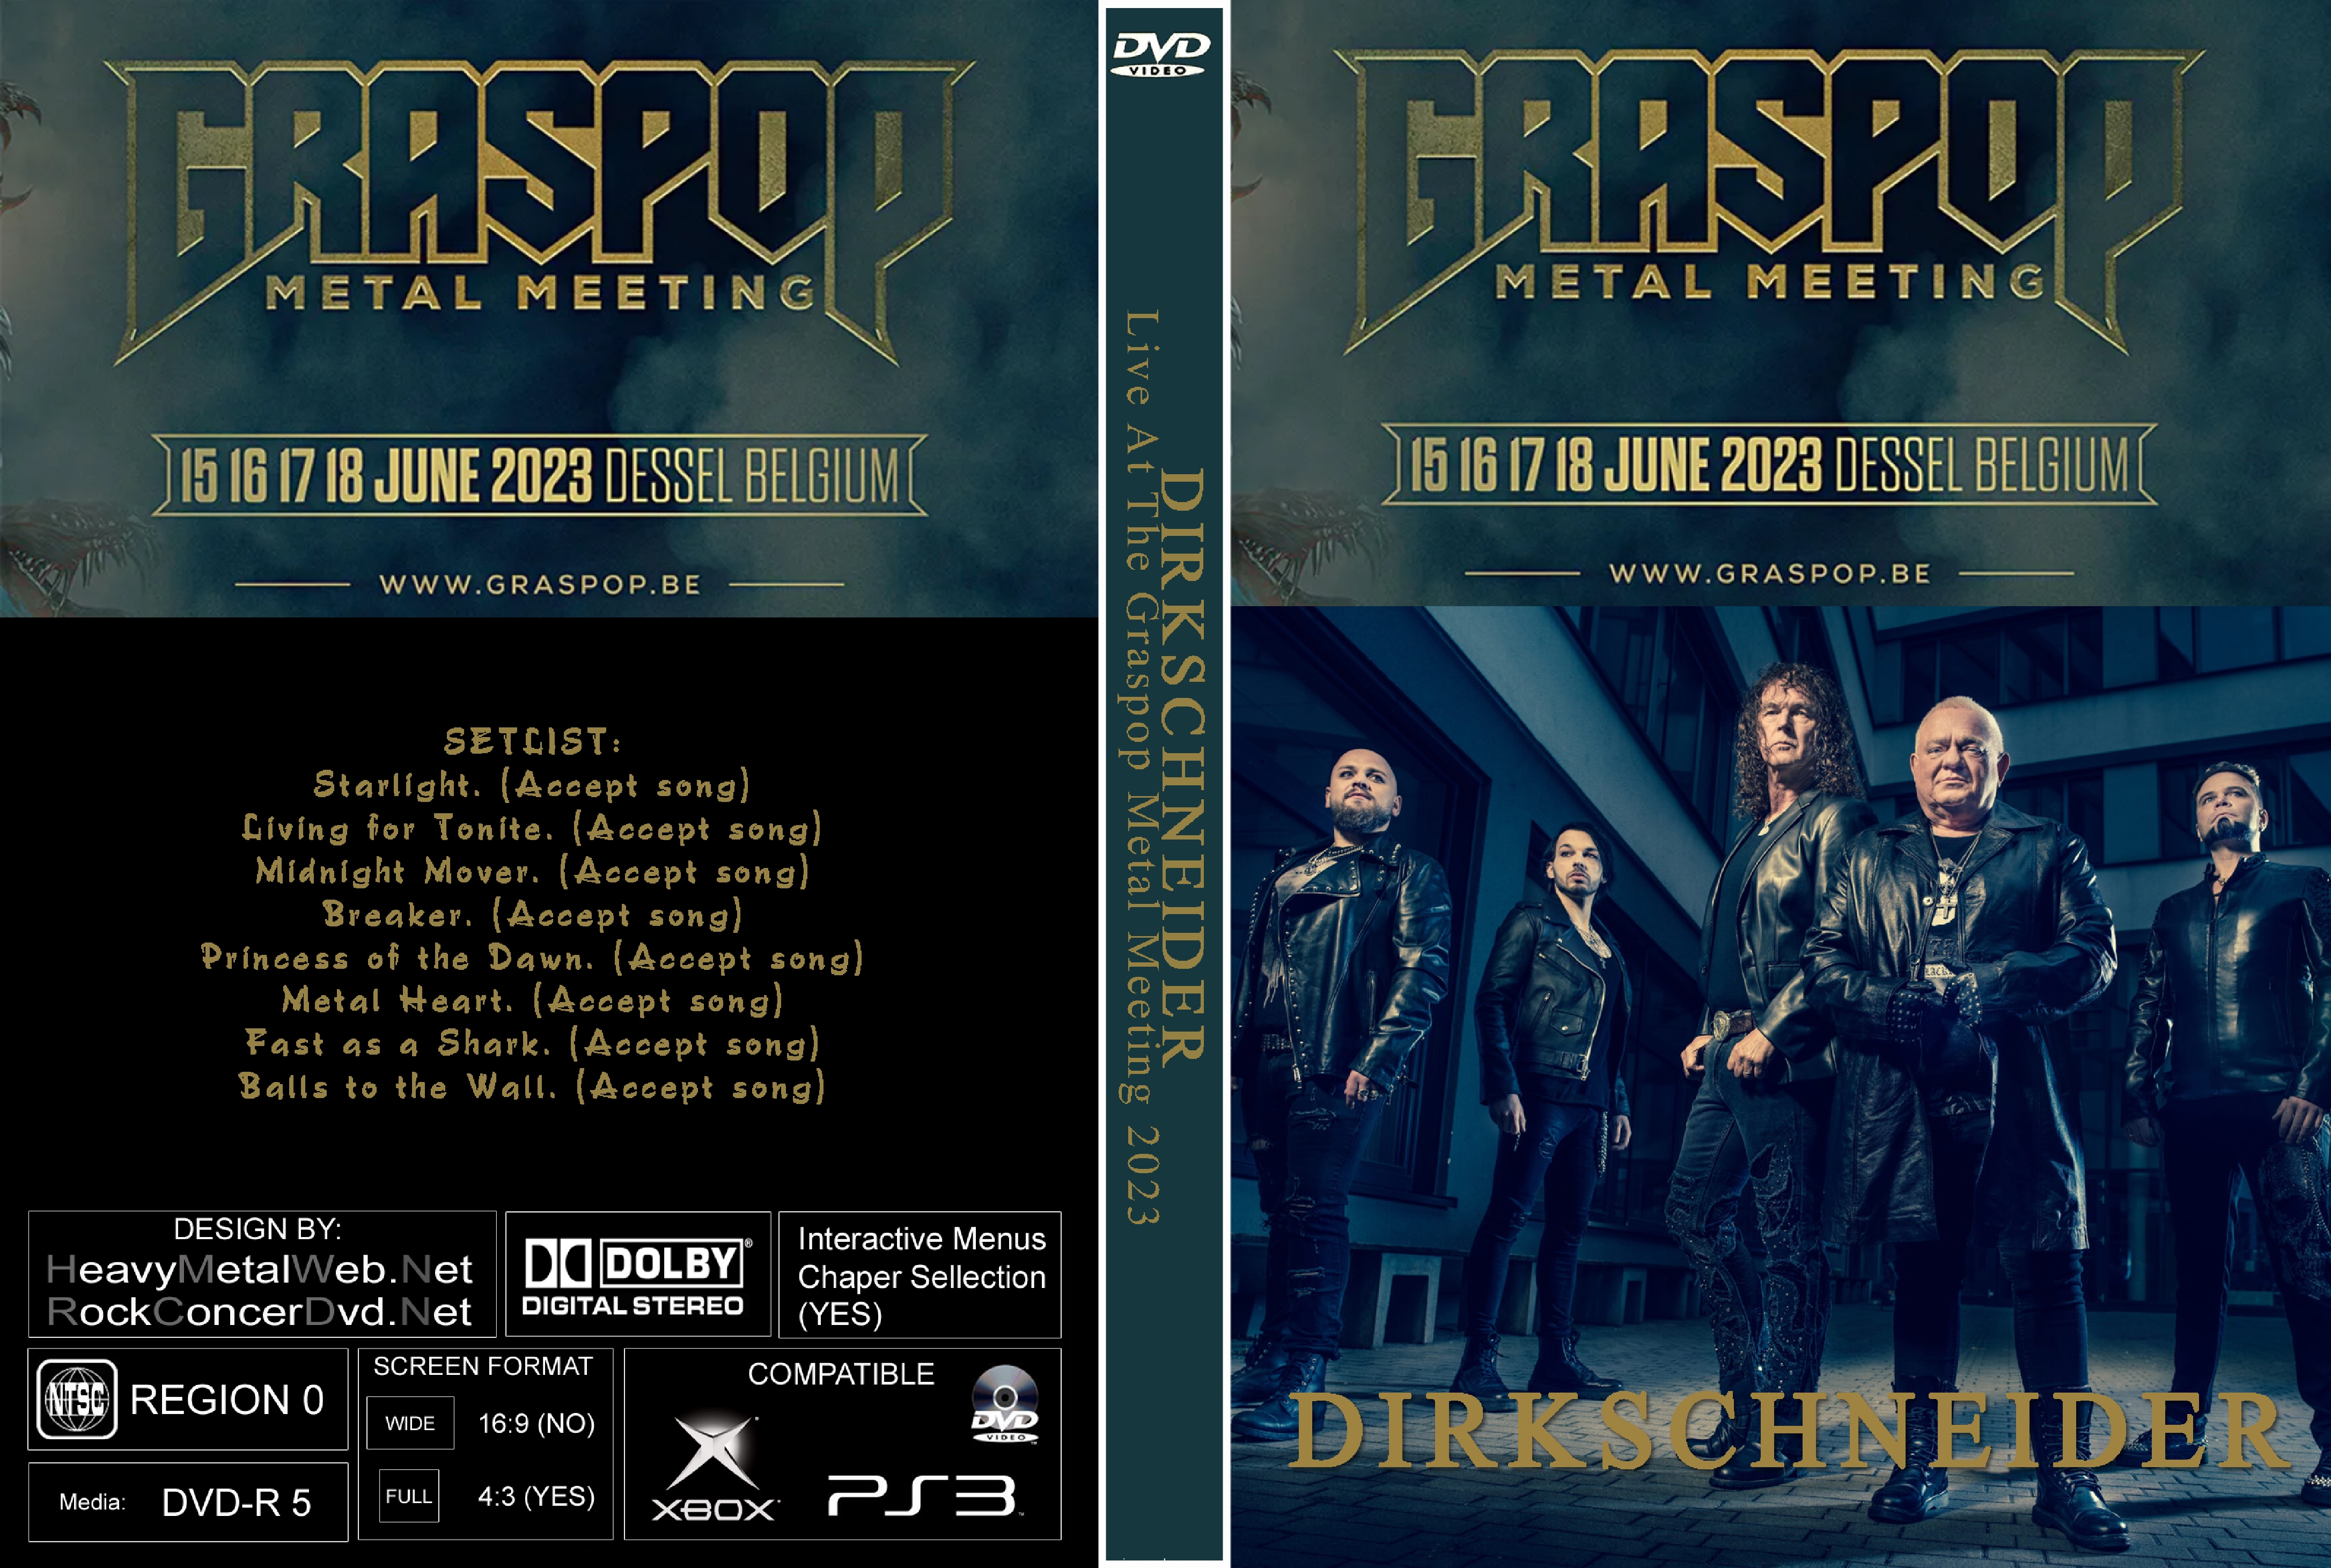 DIRKSCHNEIDER Live At Graspop Metal Meeting Belgium 2023.jpg